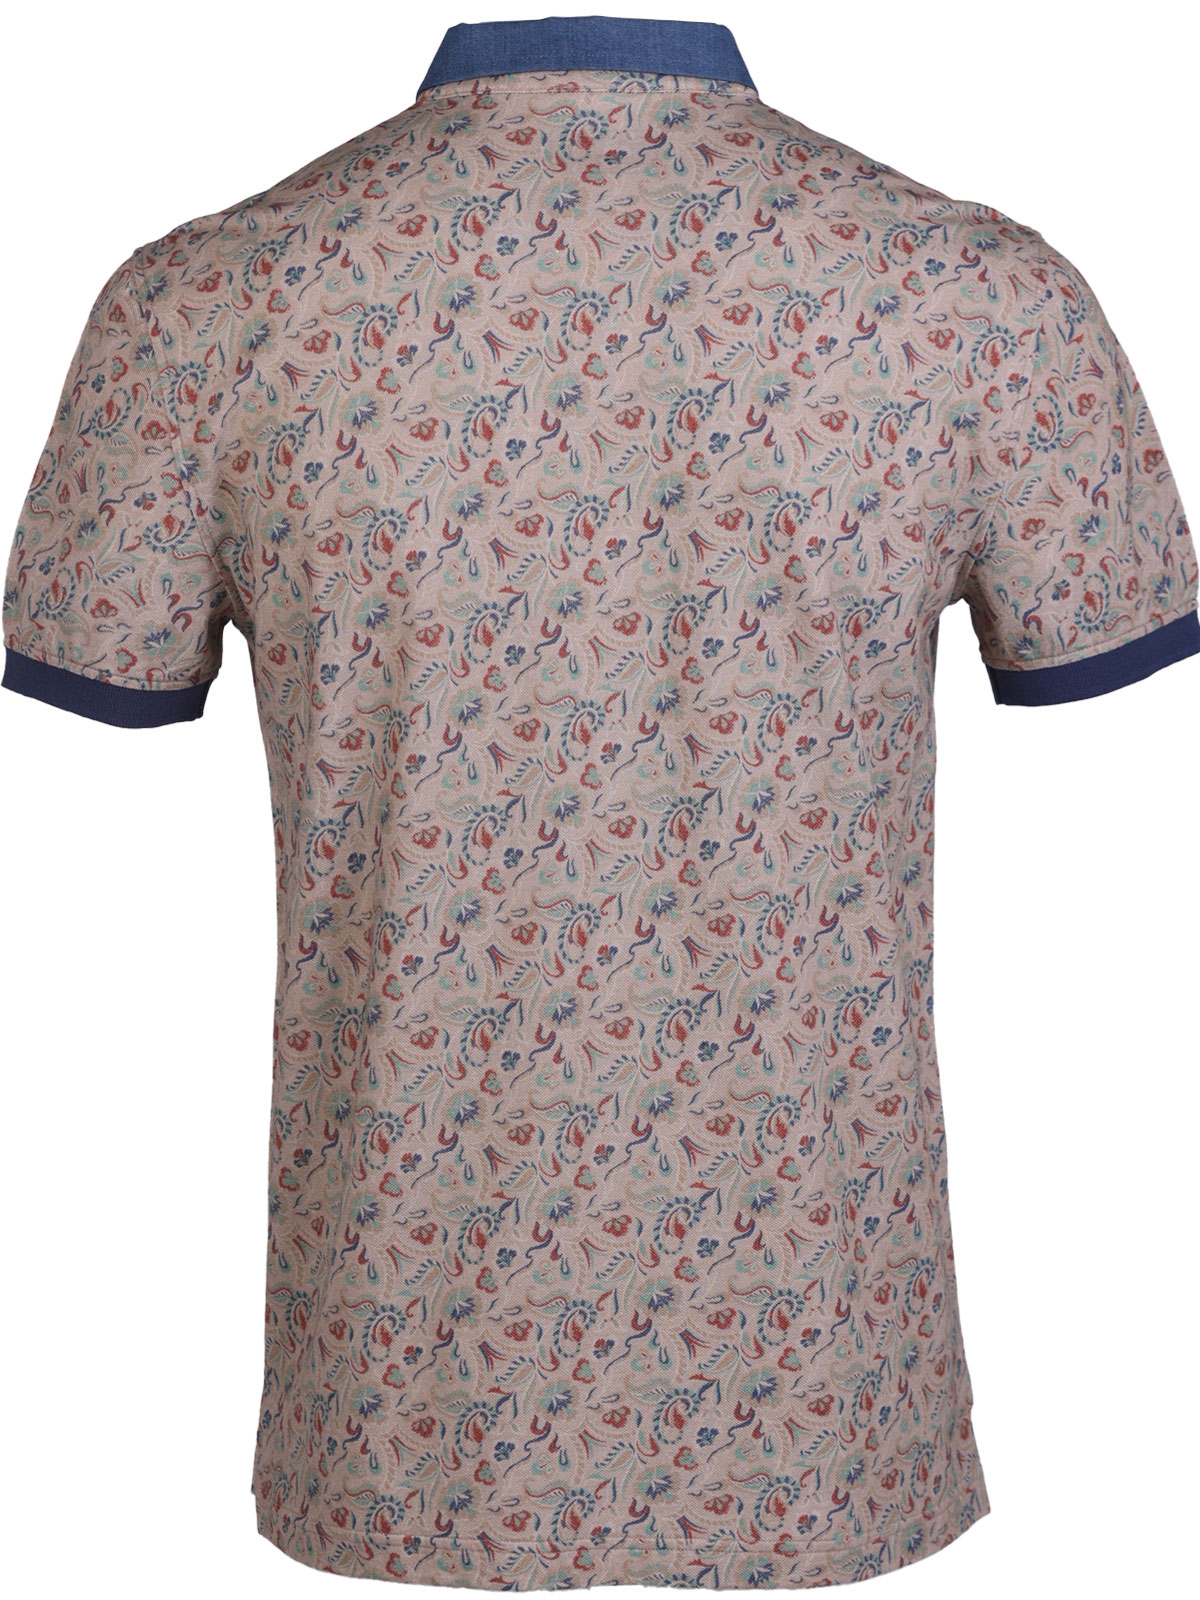 Μπλουζάκι σε καφέ χρώμα με φιγούρες - 93444 € 42.74 img2